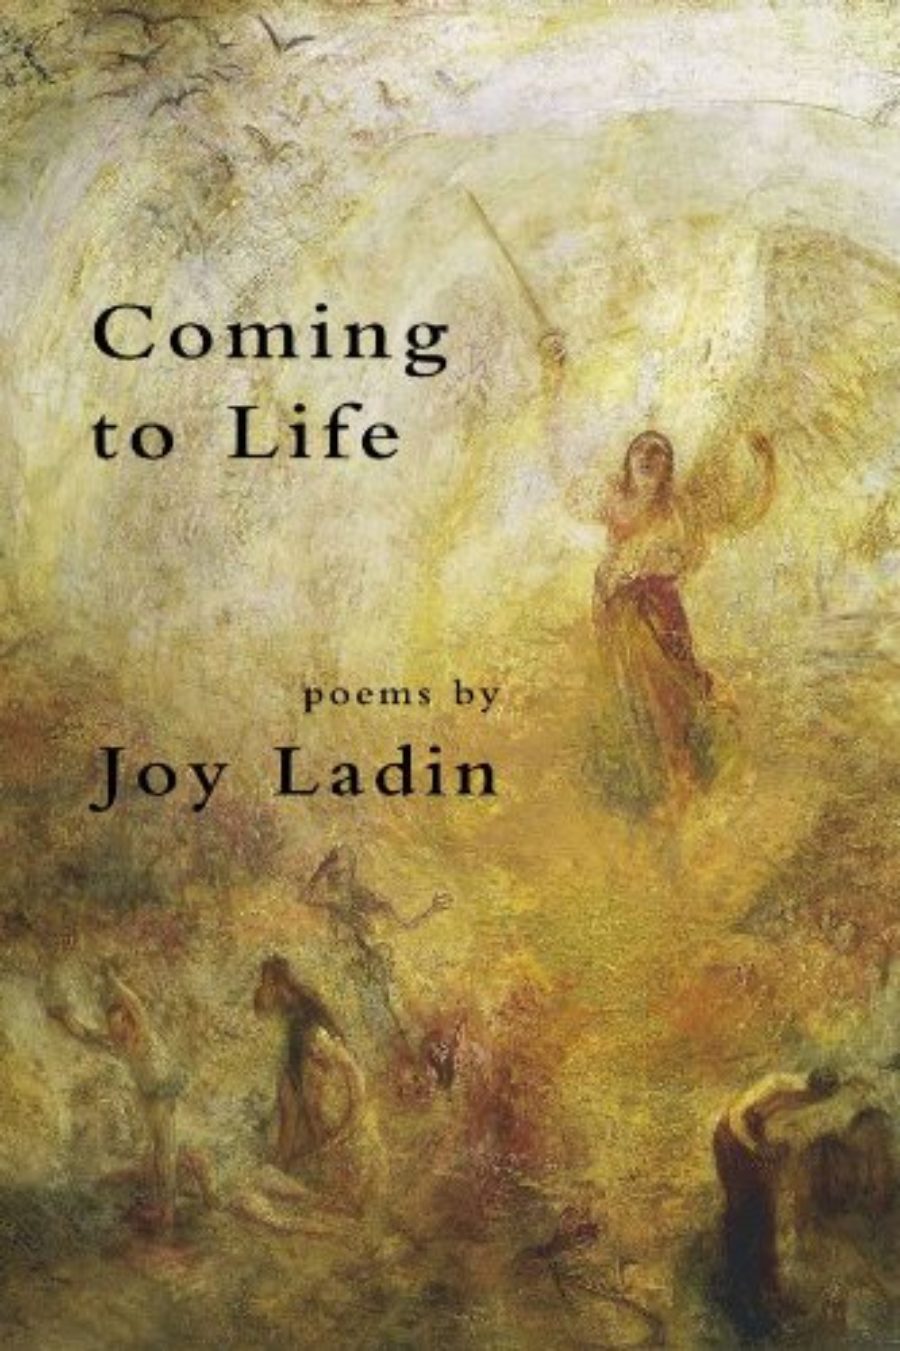 joy ladin through the door of life